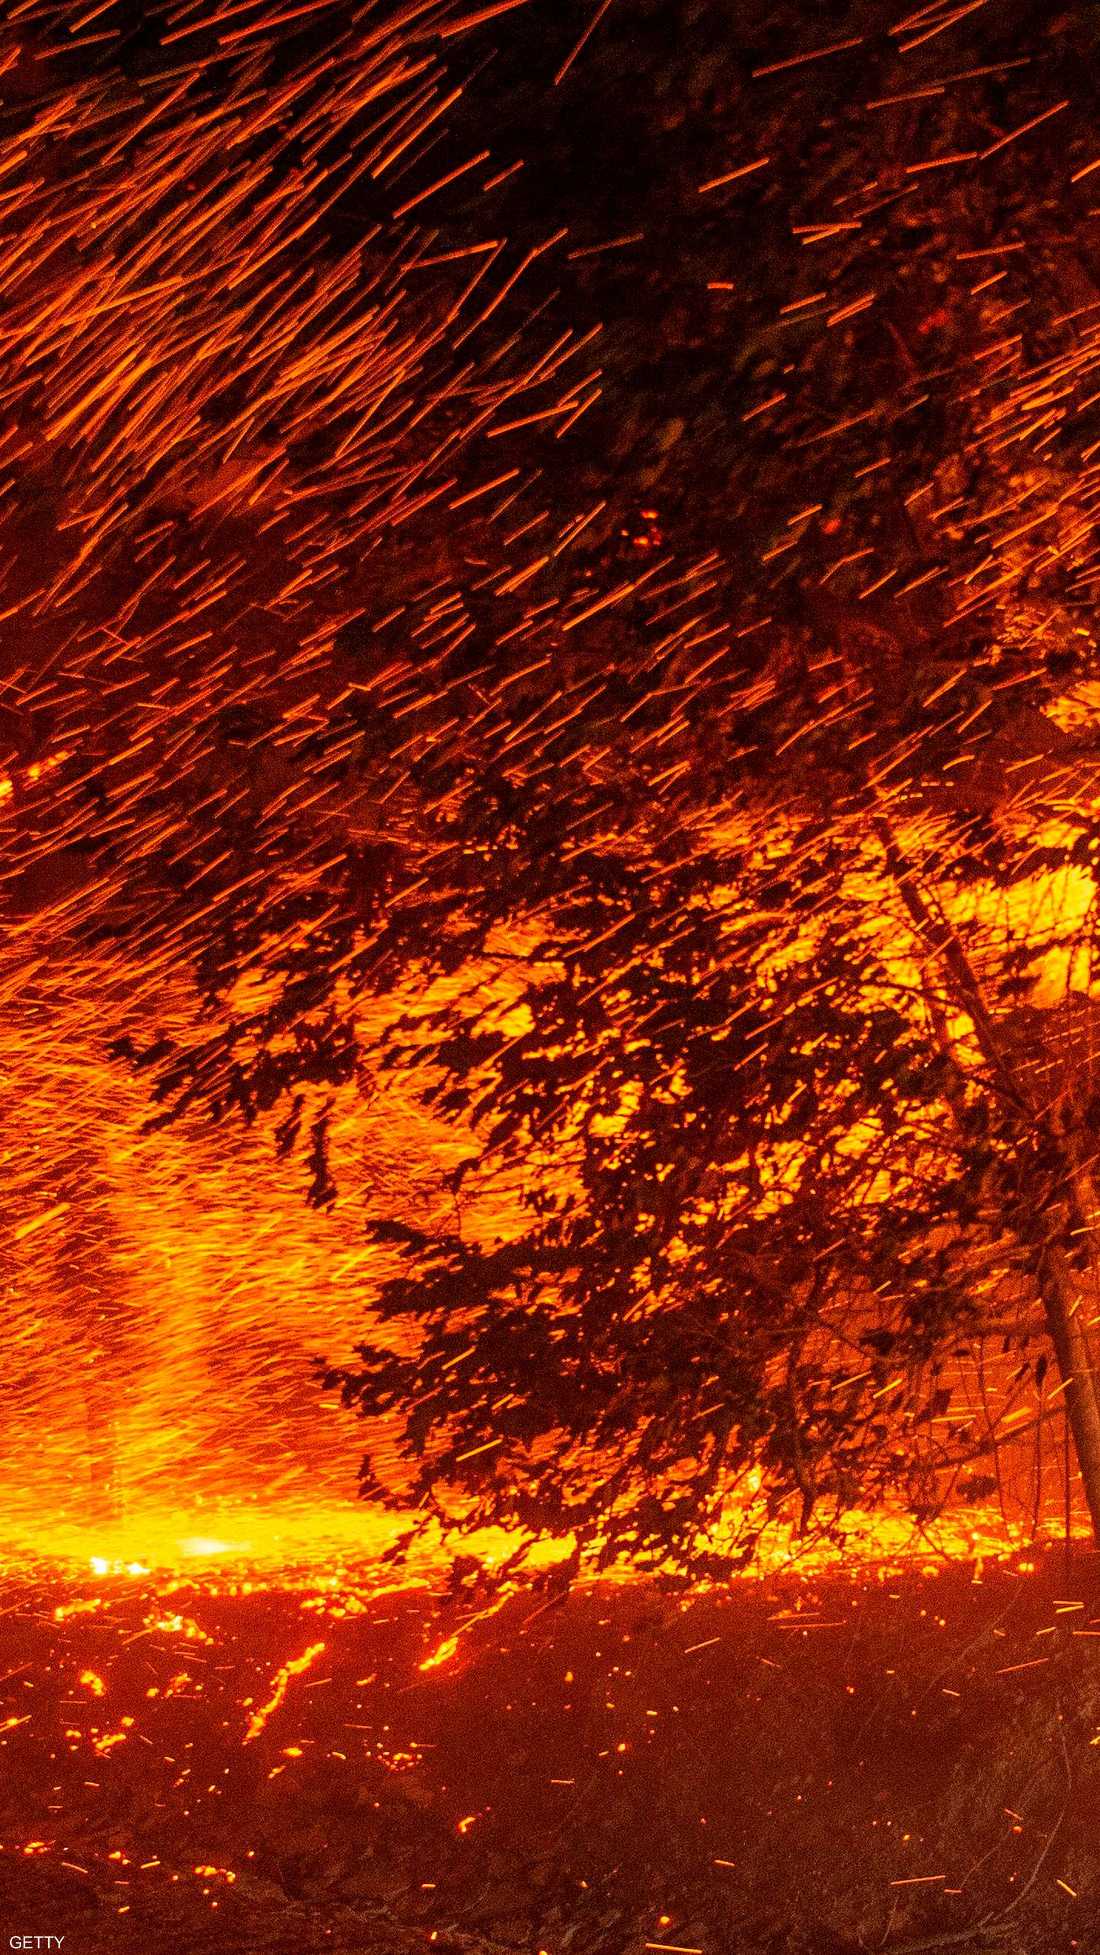 أدت الحرائق إلى إجلاء 180 ألف شخص من منازلهم.